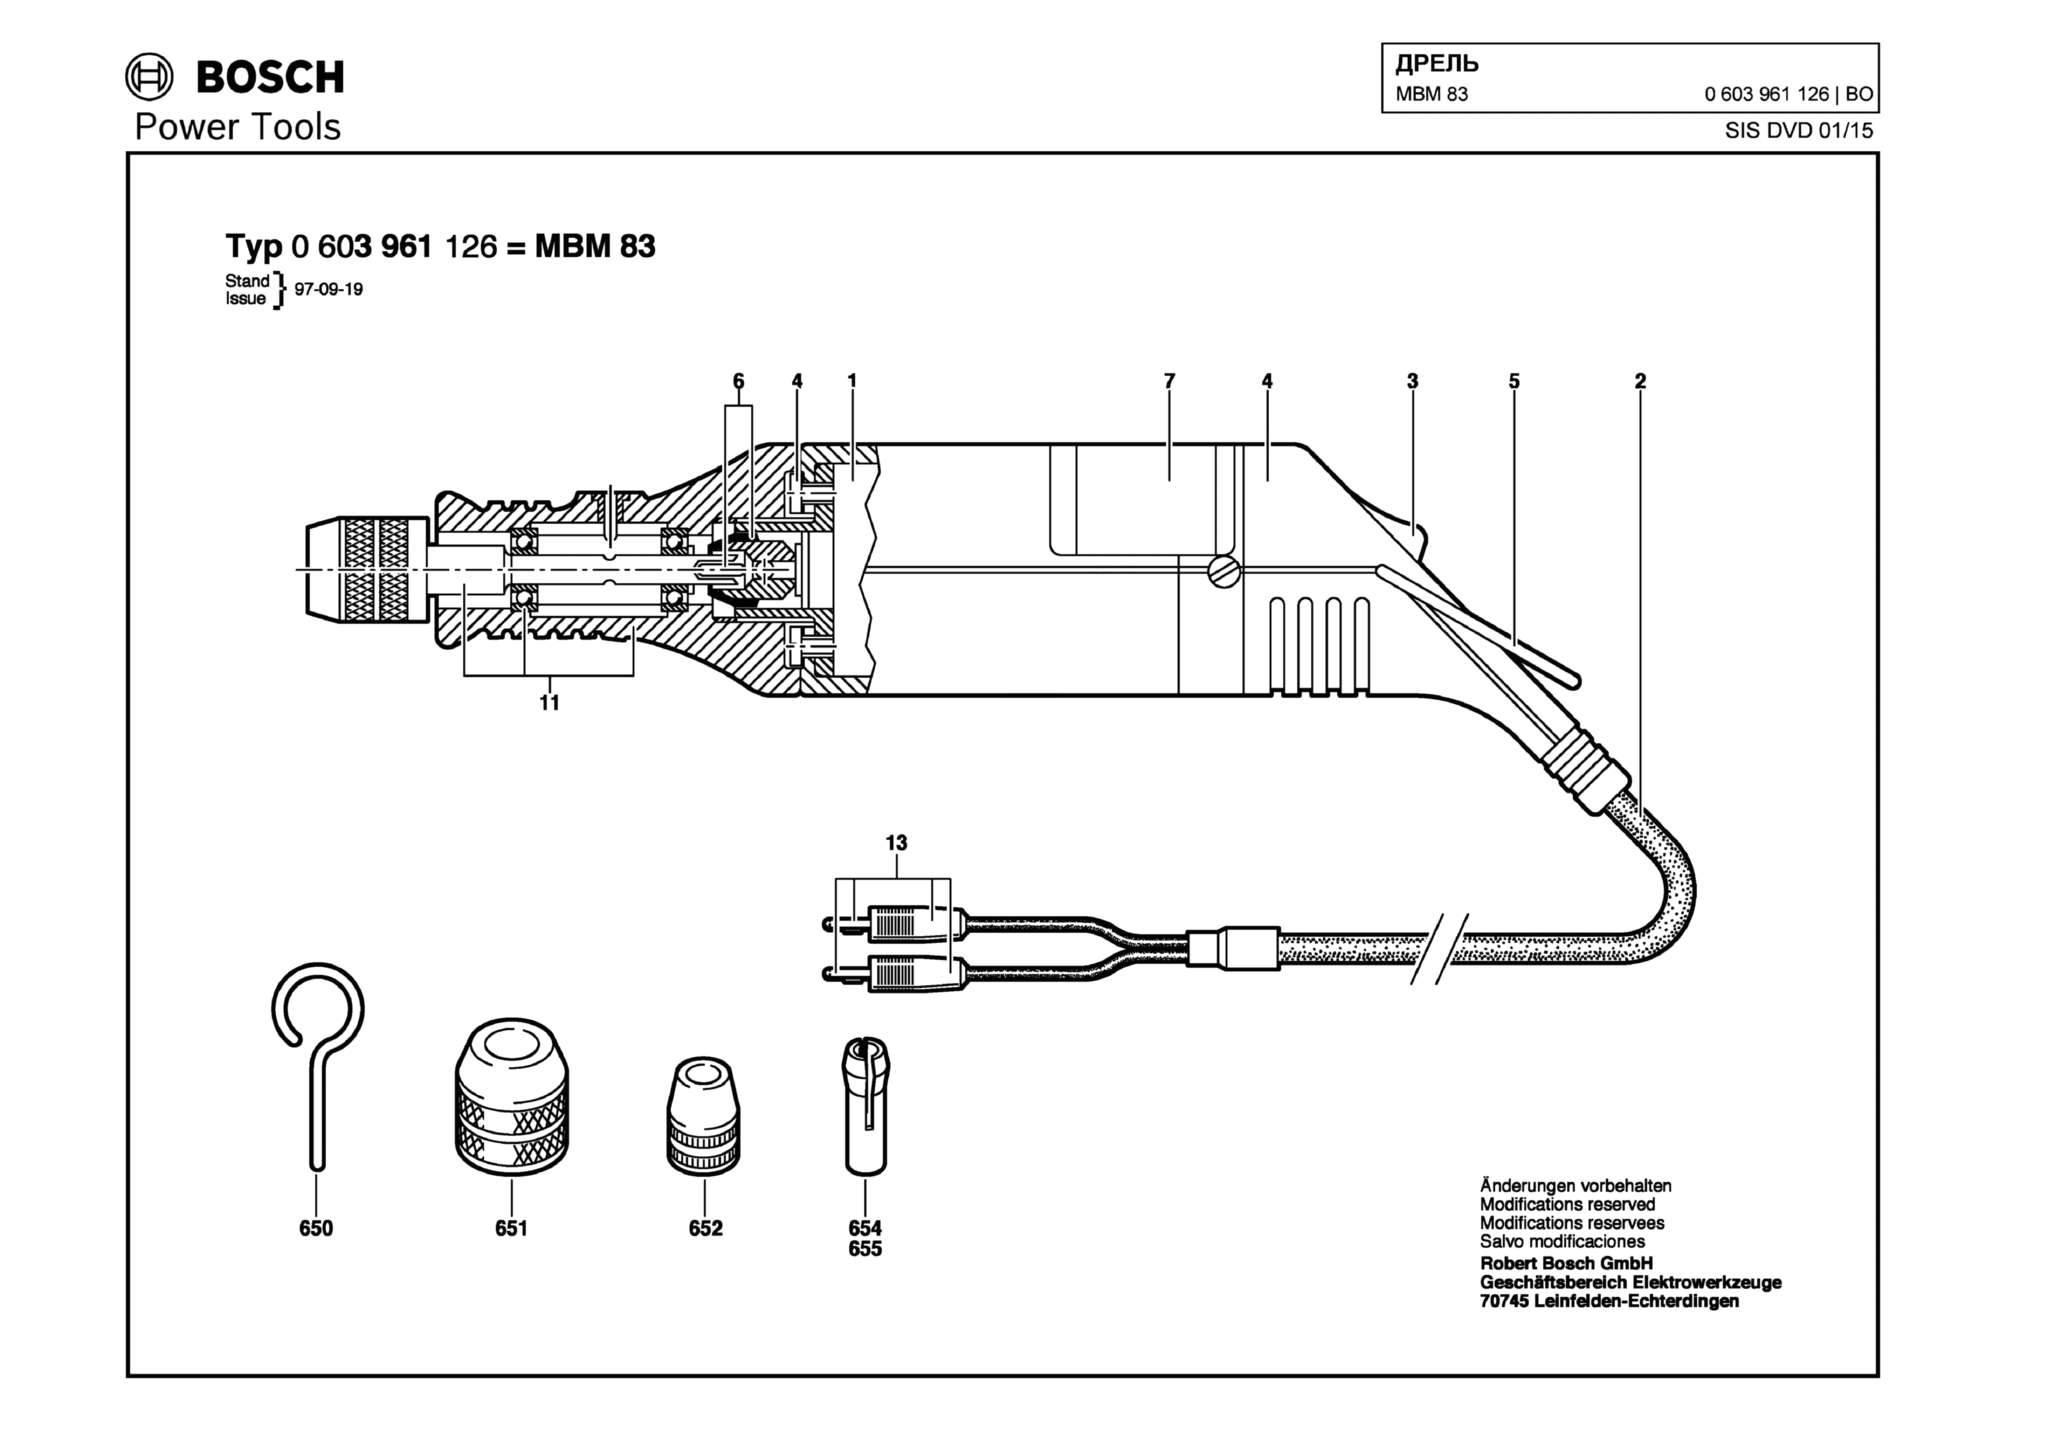 Запчасти, схема и деталировка Bosch MBM 83 (ТИП 0603961126)